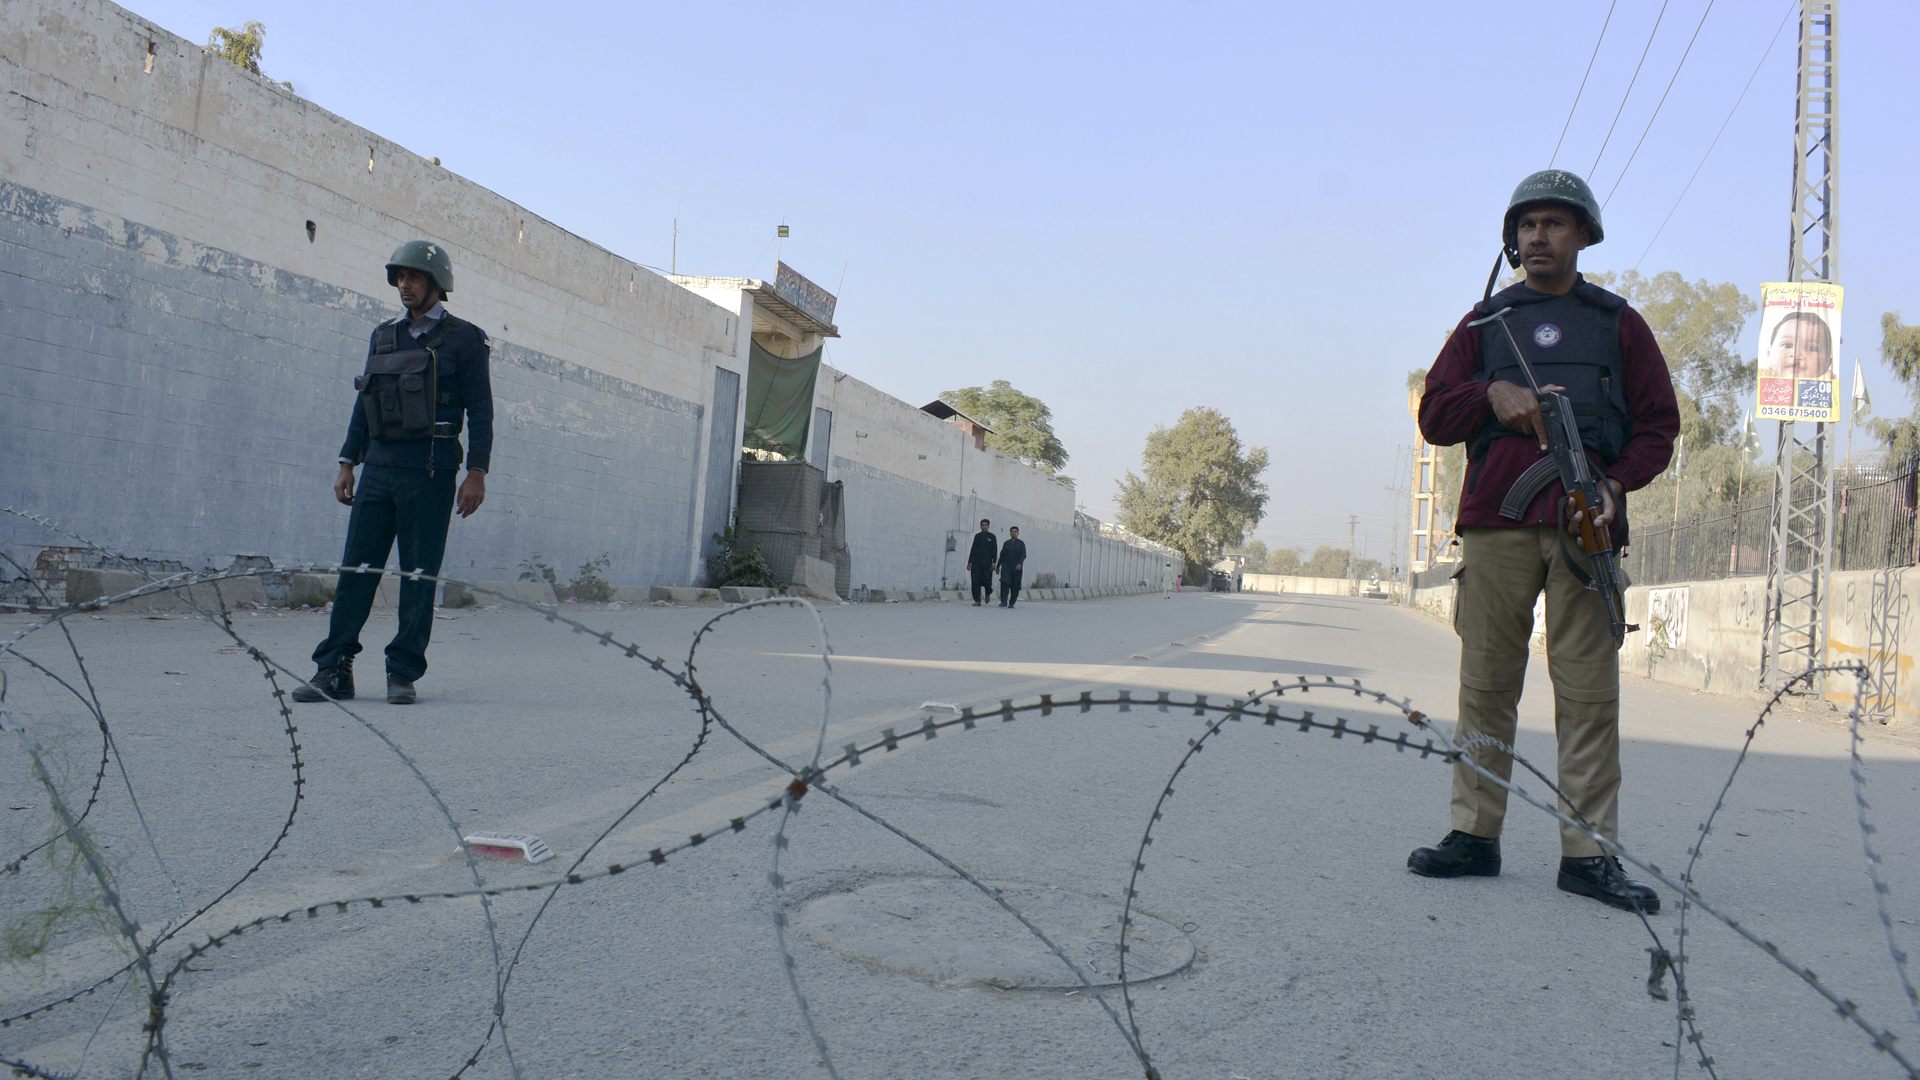  Sicherheitspersonal bewacht eine mit Stacheldraht blockierte Straße, die zu einem Gefängnis führt | dpa